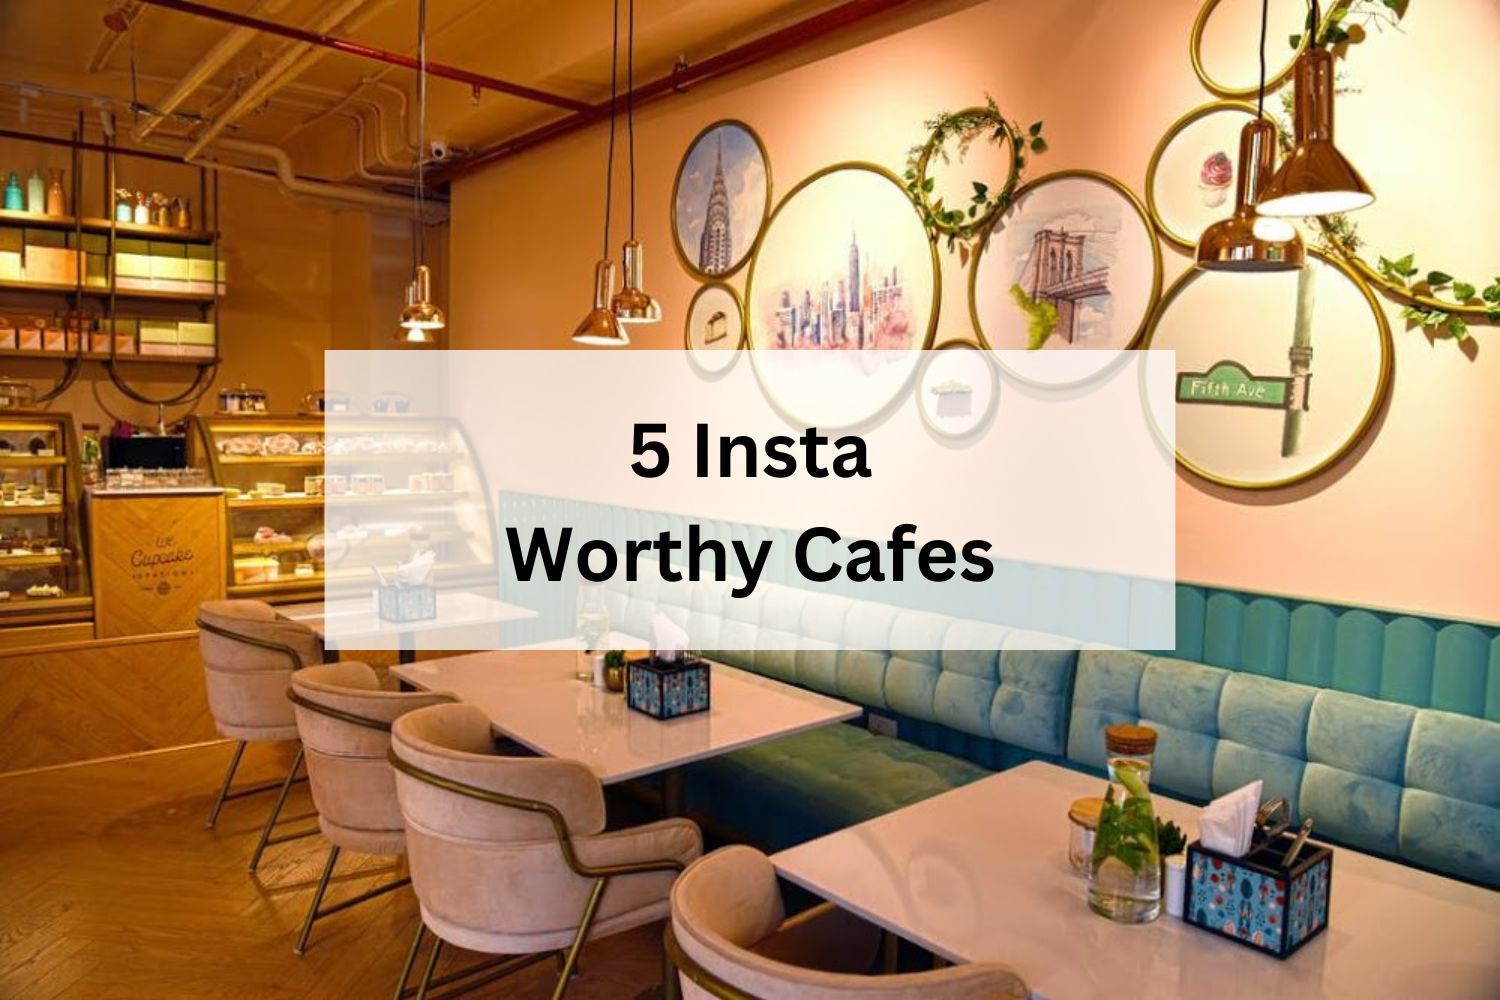 5 Insta Worthy Cafes